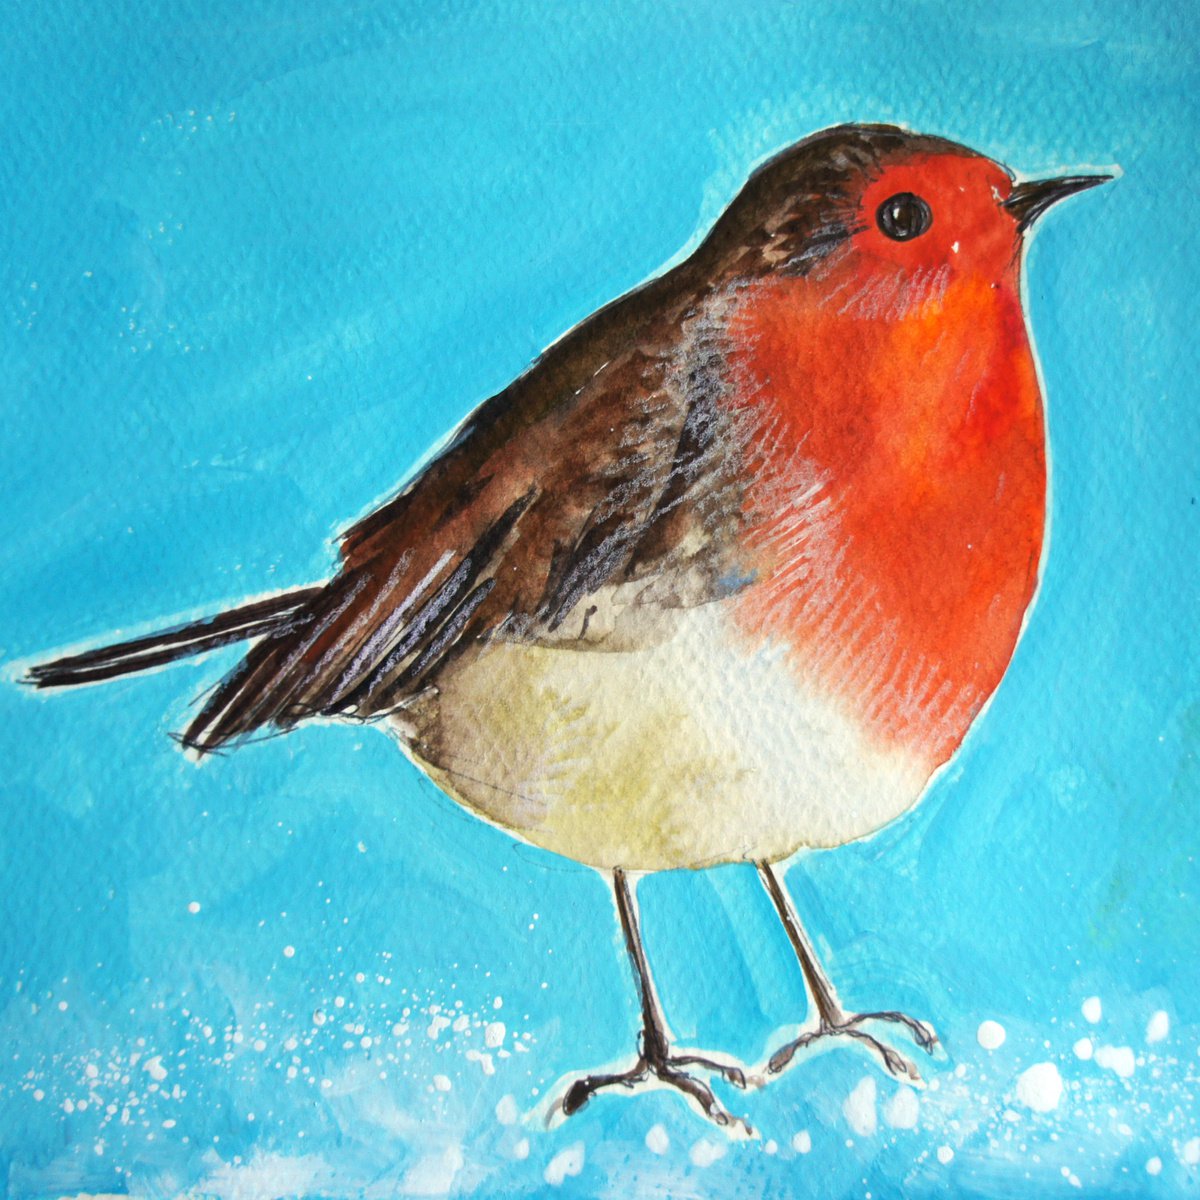 Little Robin by Julia Rigby